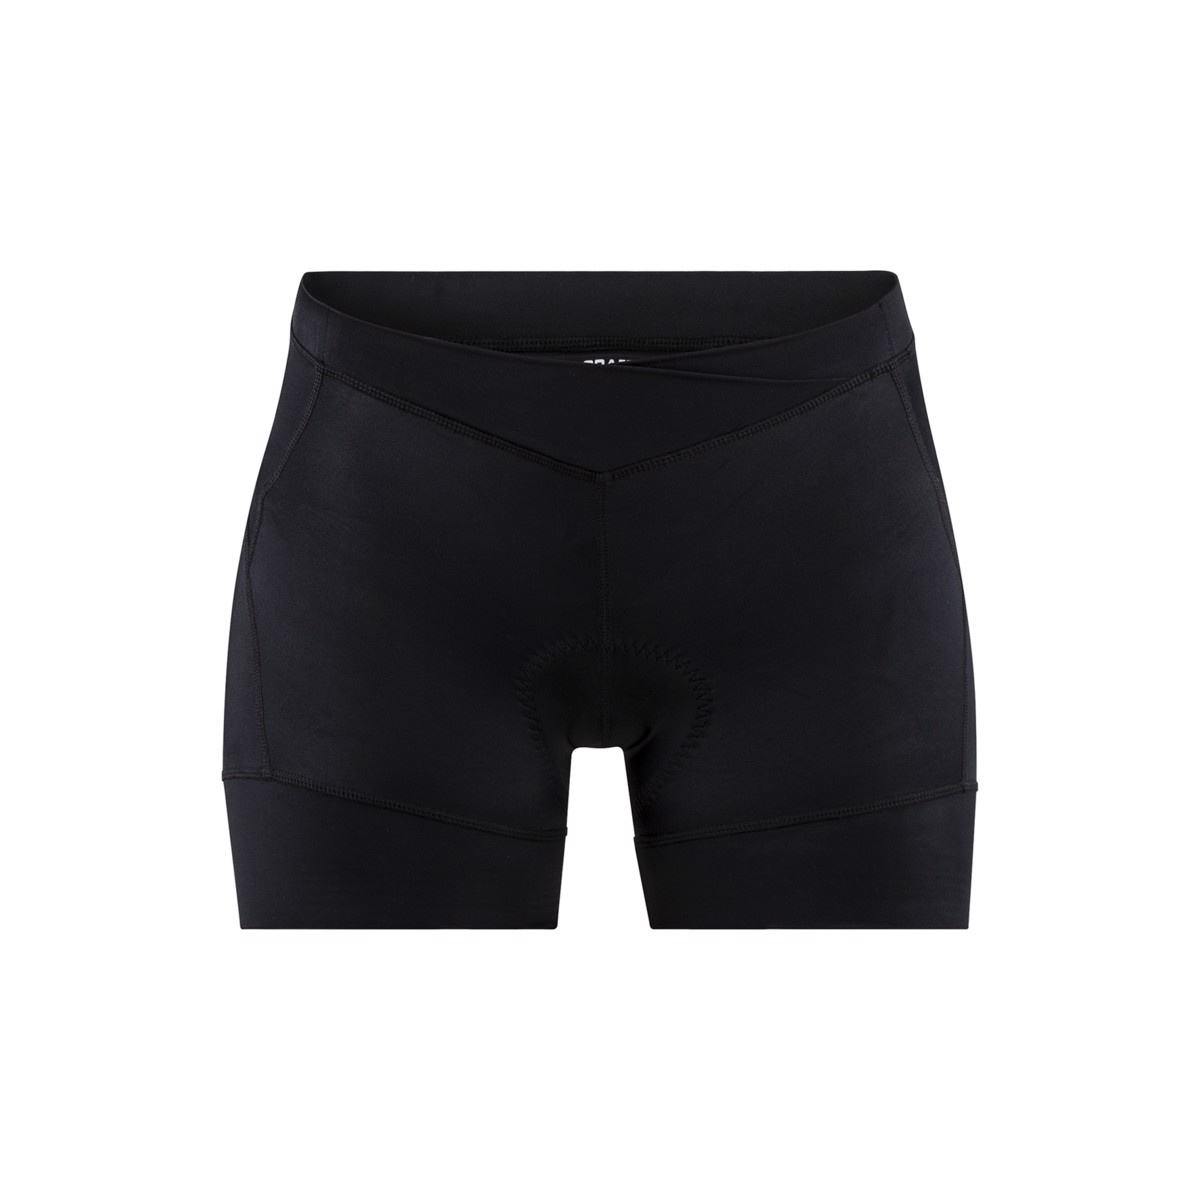 Dámské krátké cyklistické kalhoty CRAFT Essence Hot černá XL